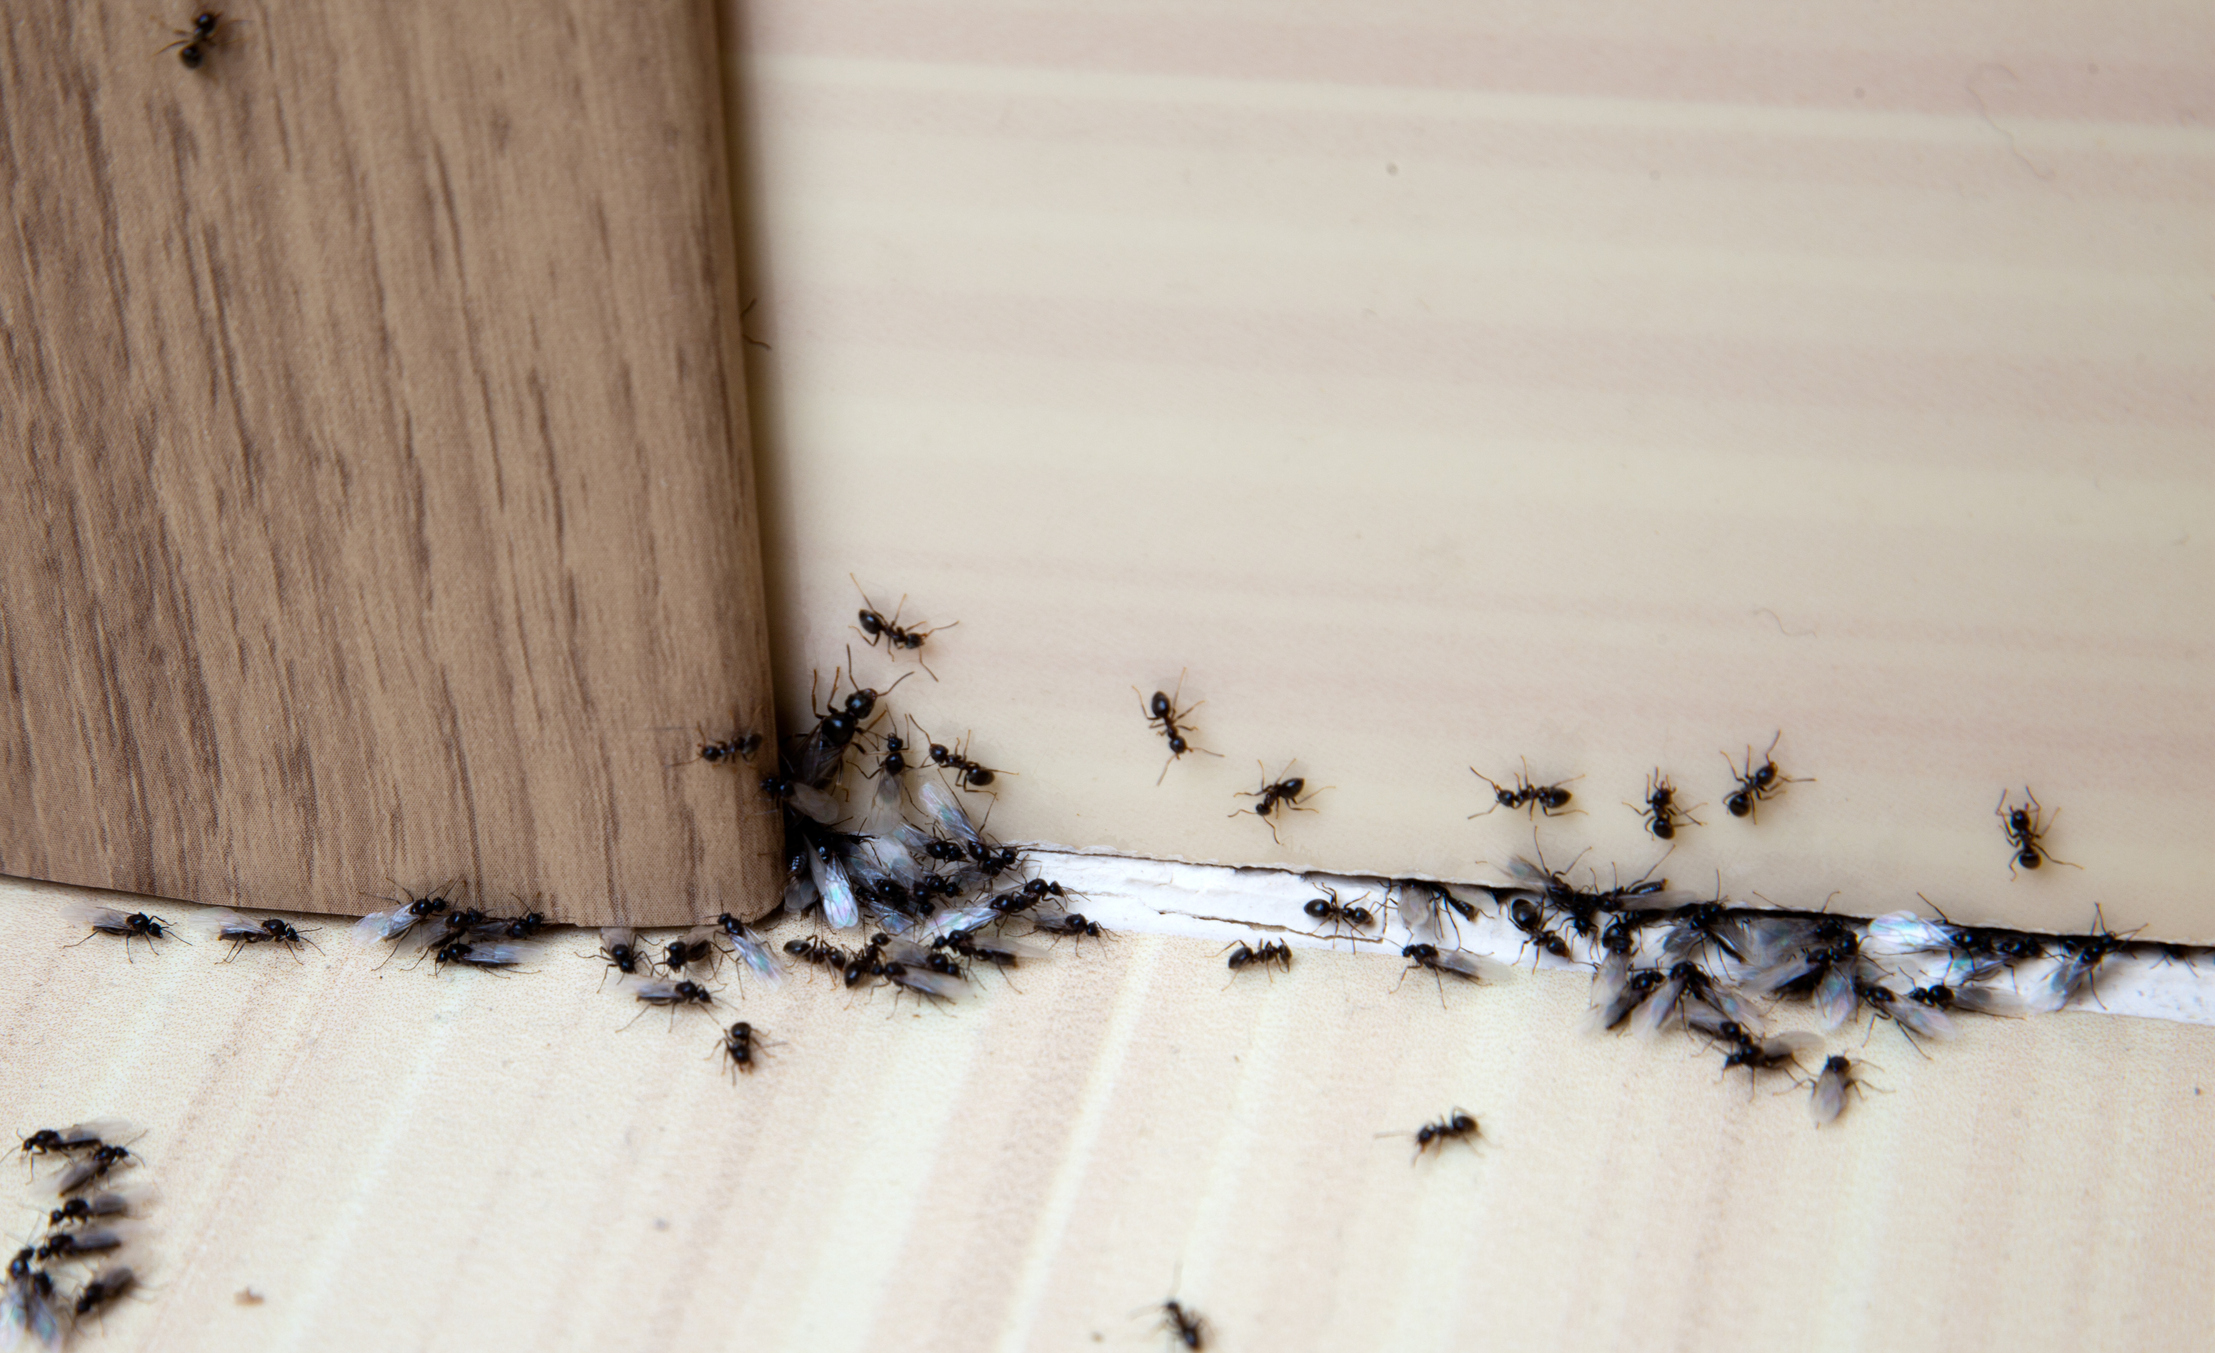 Ameisen fernhalten, das geht tatsÃ¤chlich mit Kreide. Was du beachten musst. Quelle: getty images / Cherkas